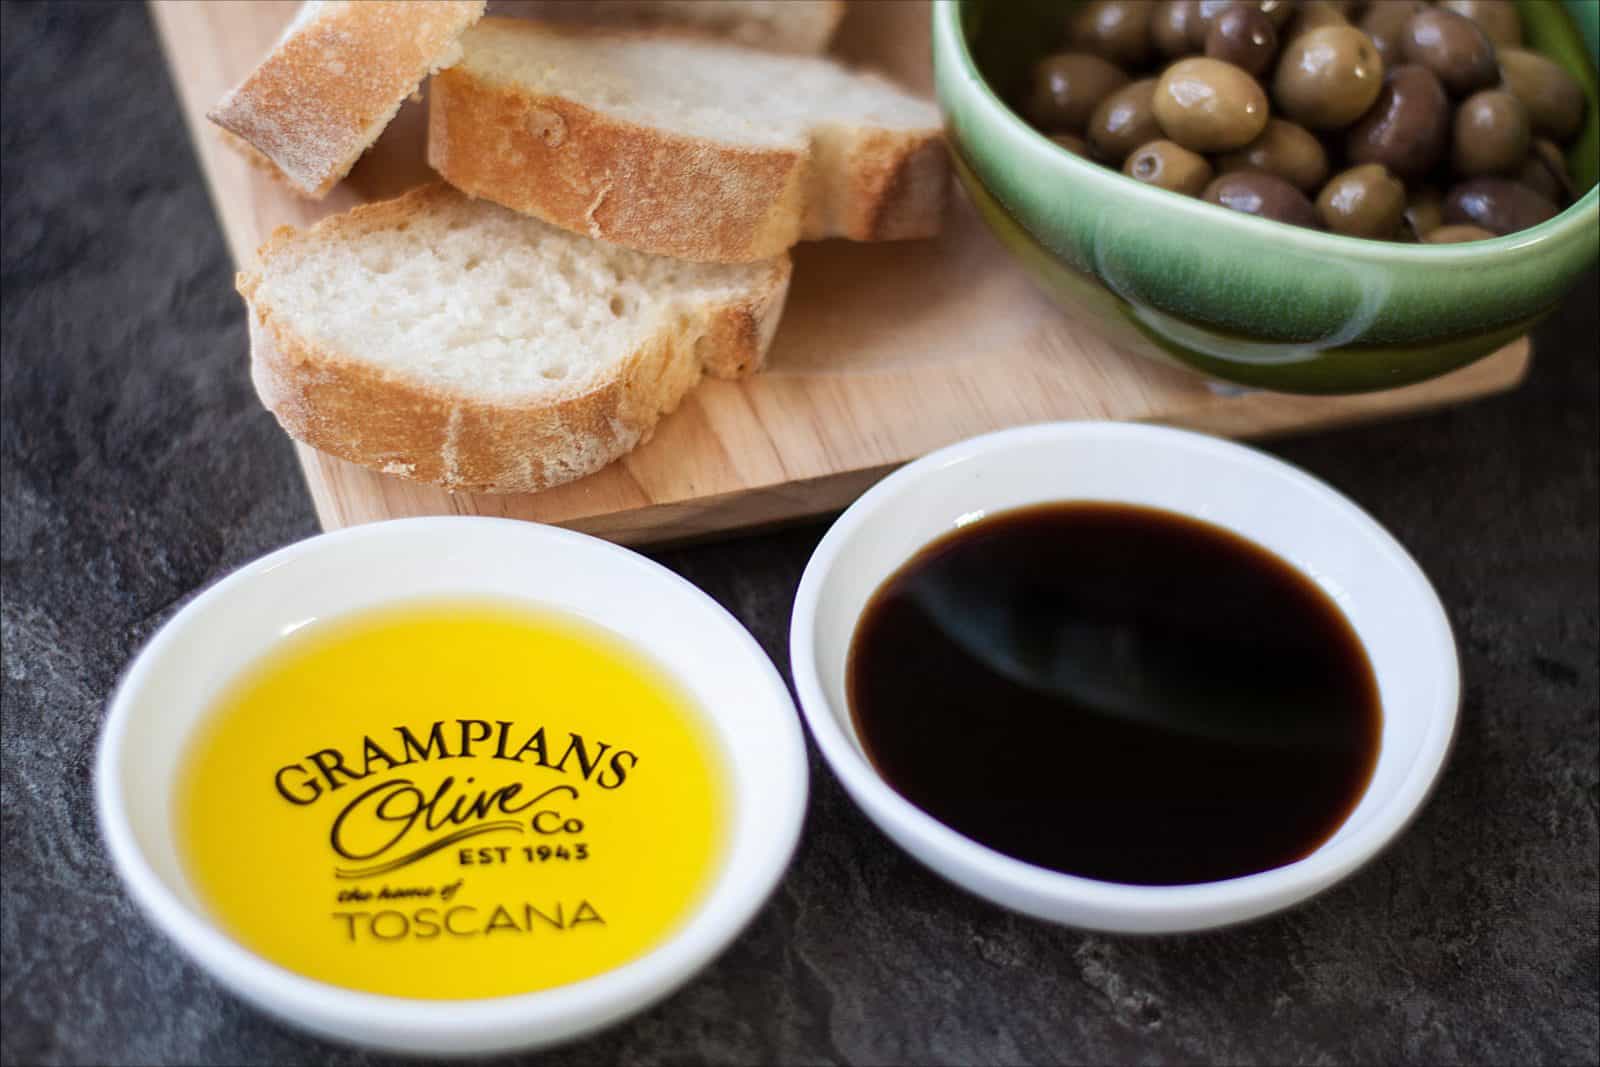 Grampians Olive Co. olive oil